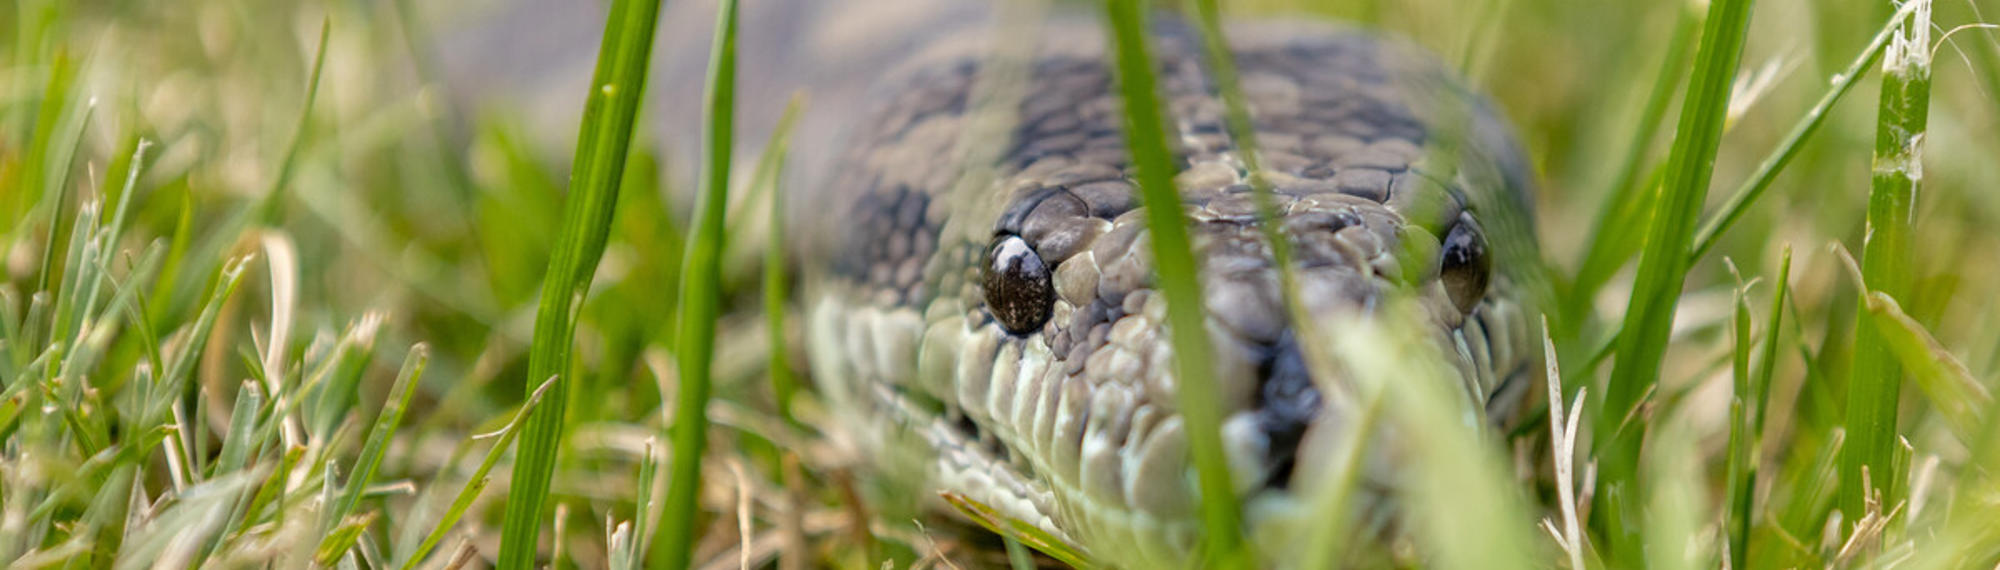 Close up of Coastal Carpet Python sliding through the grass